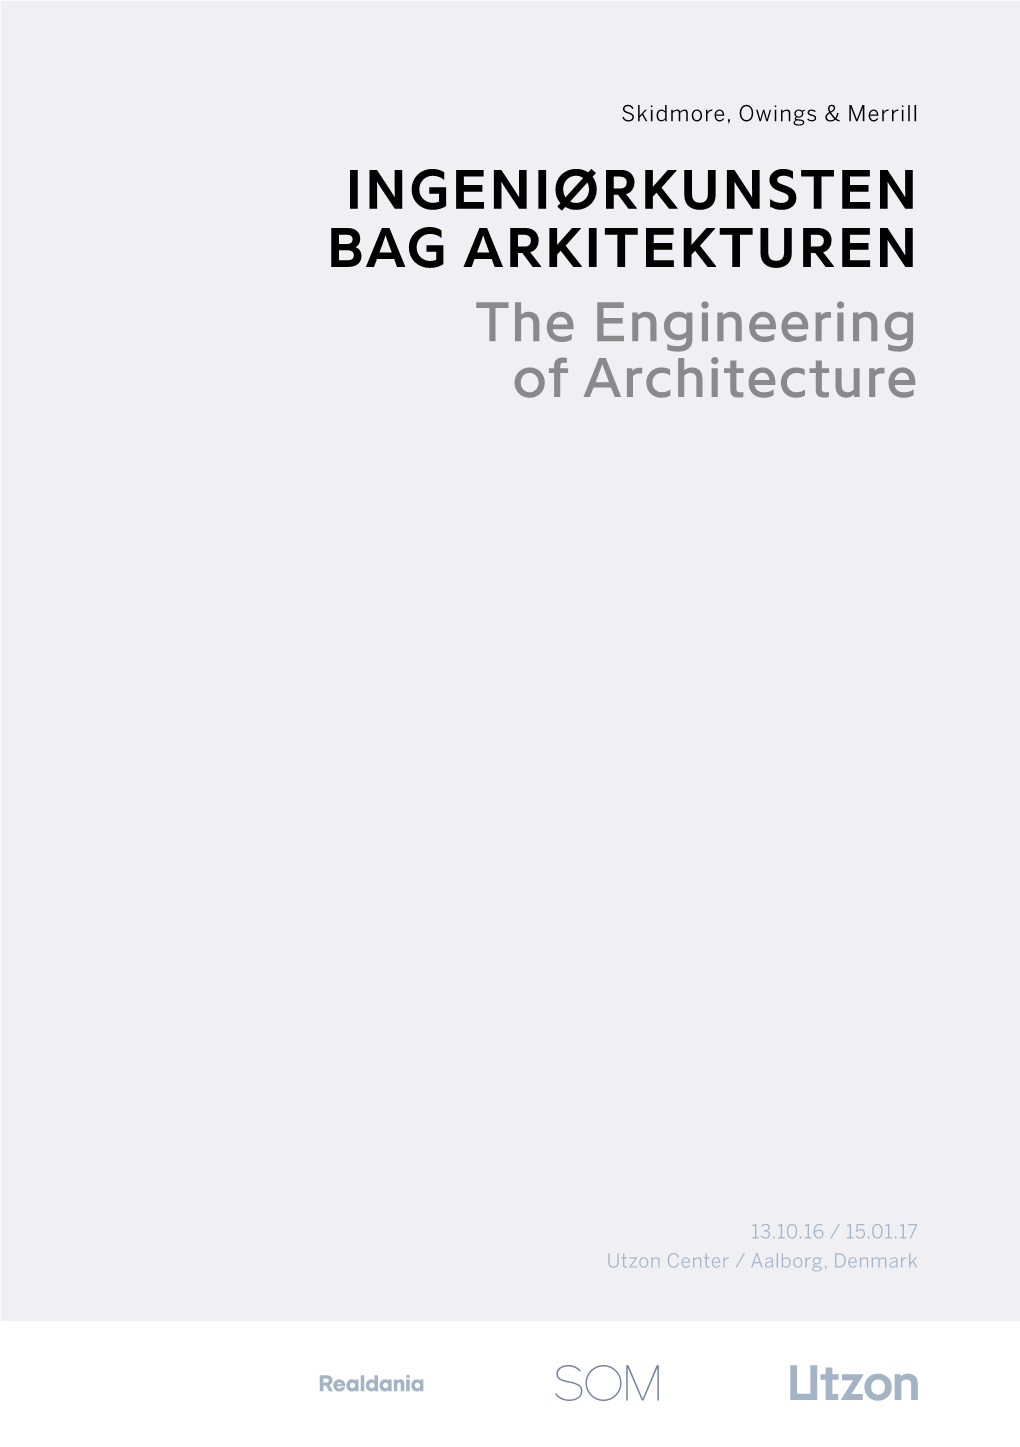 INGENIØRKUNSTEN BAG ARKITEKTUREN the Engineering of Architecture